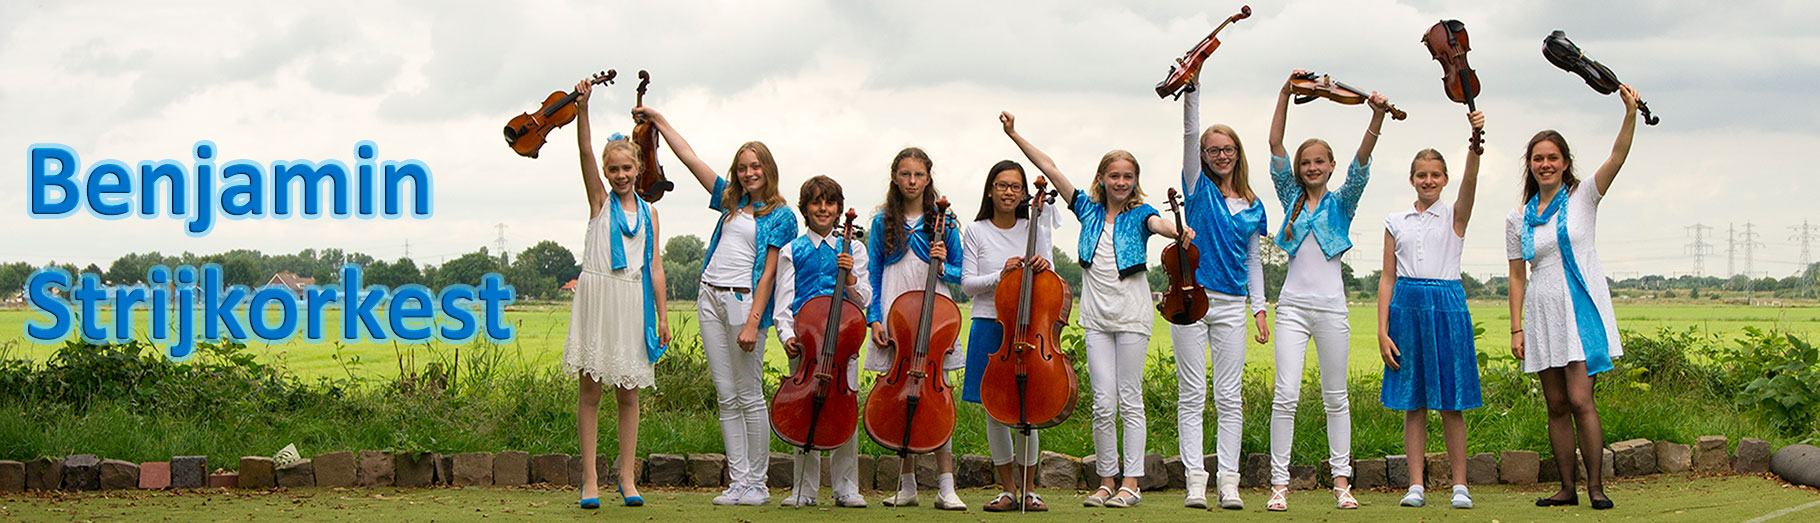 Het Benjamin Strijkorkest is deelnemer van Helikon Festival 2015.